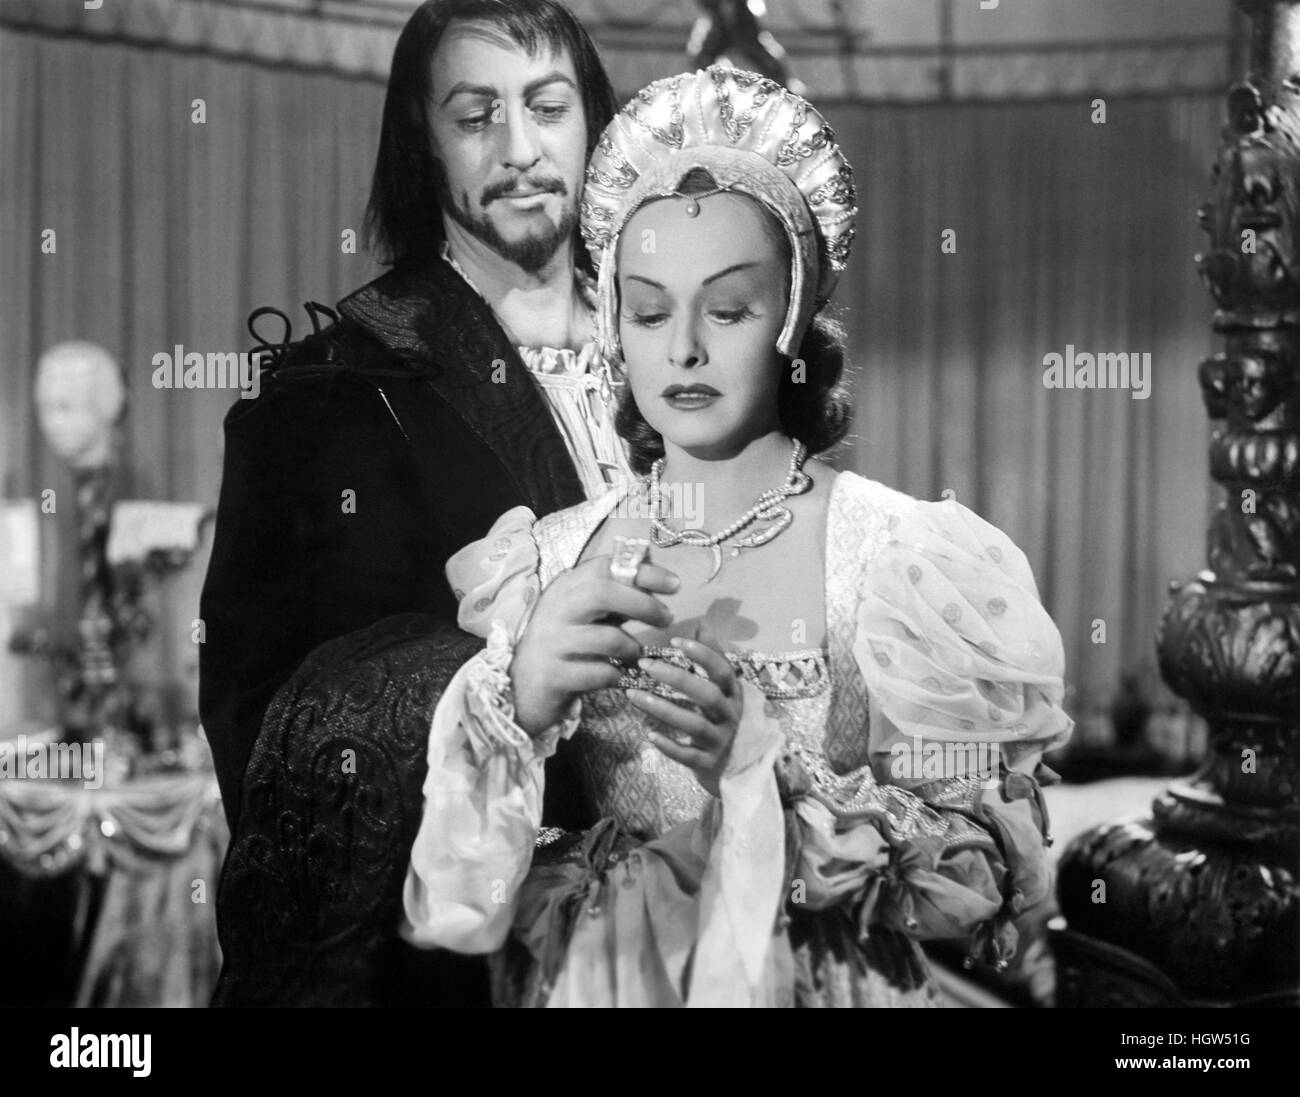 Sposa di vendetta 1949 Paramount Pictures film con Paulette Goddard come Lucrezia Borgia e John Lund come il Duca di Ferrara Foto Stock